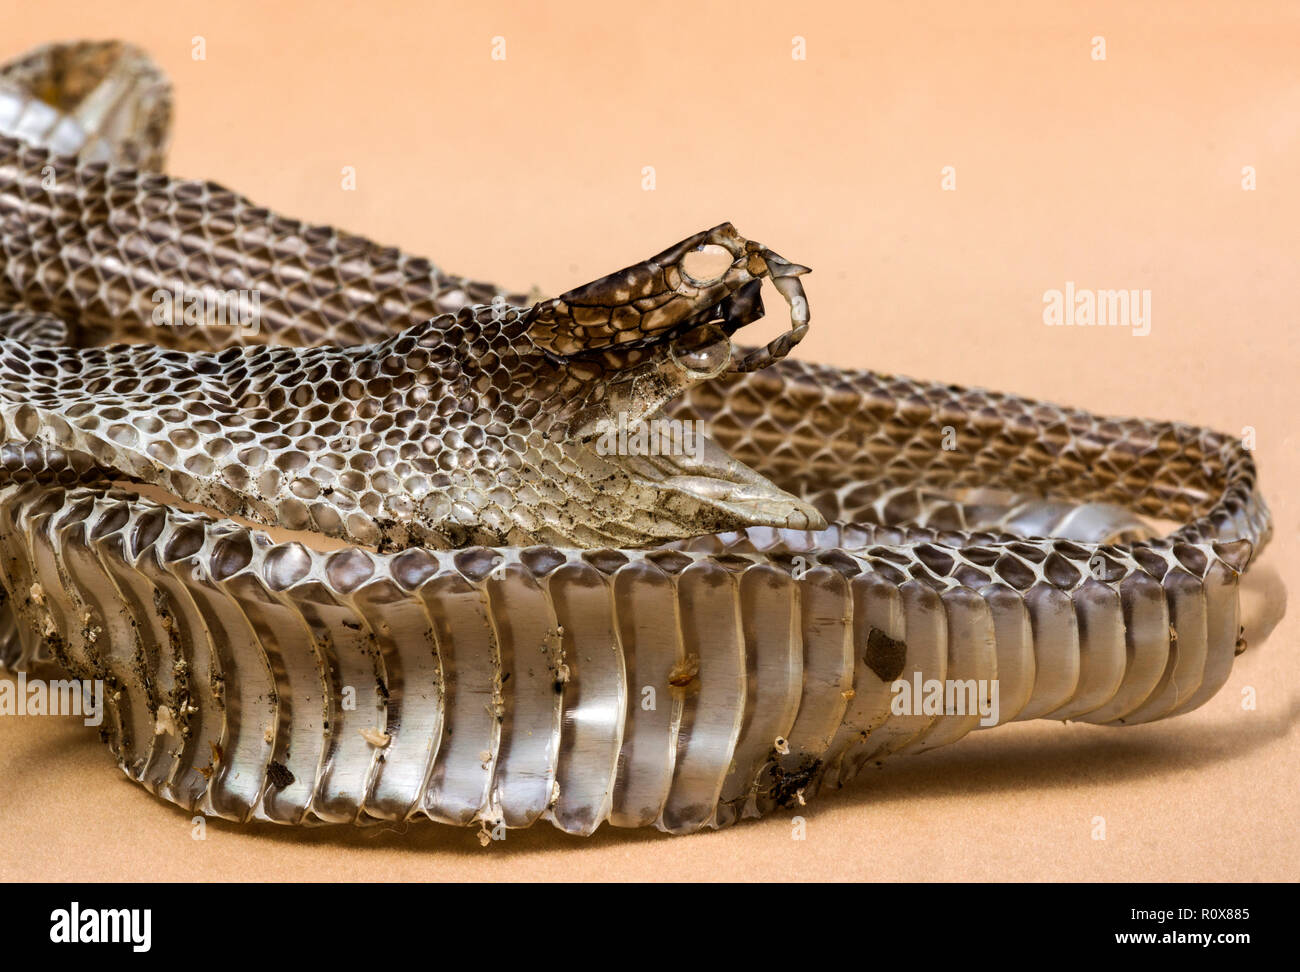 Peau de fonte d'un serpent de whip occidental (Columber viridiflavus).la peau, sans être étirée, mesurée 1 m 30 cm. France du Sud-Ouest. Banque D'Images